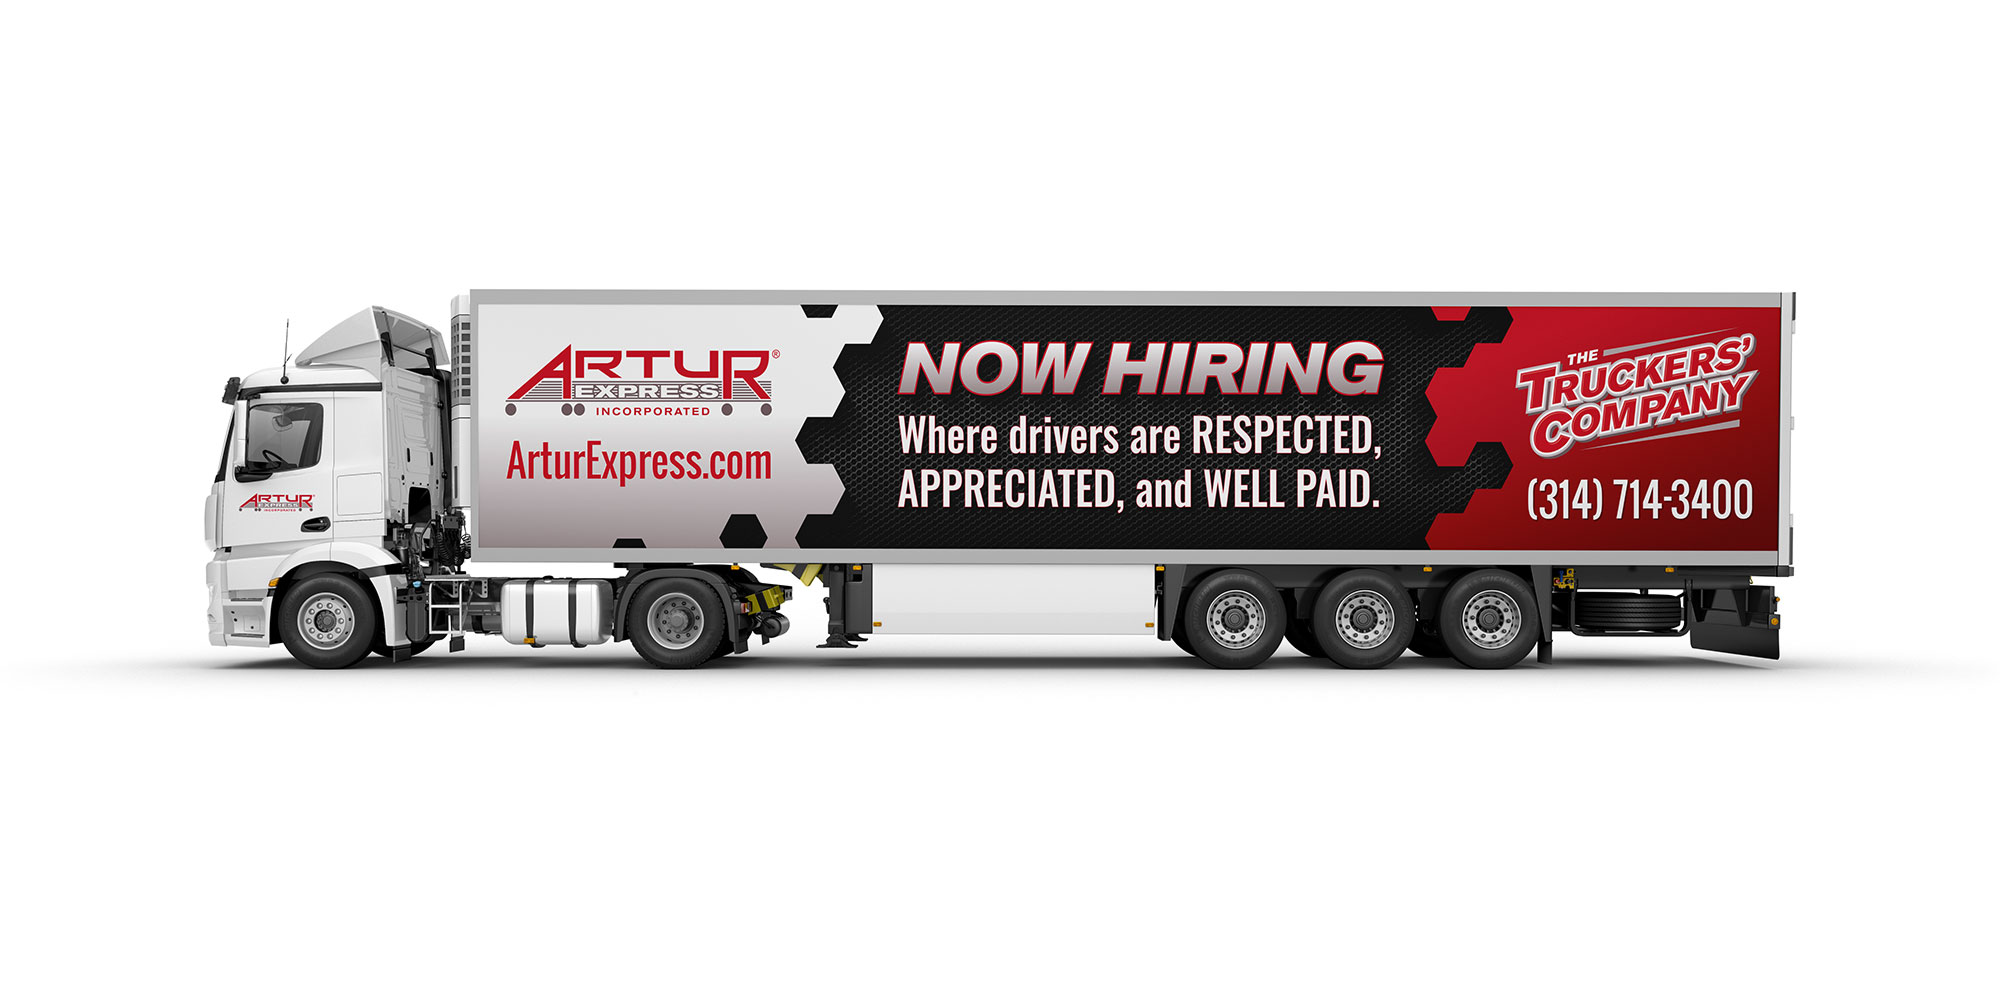 Artur hiring trailer wrap design